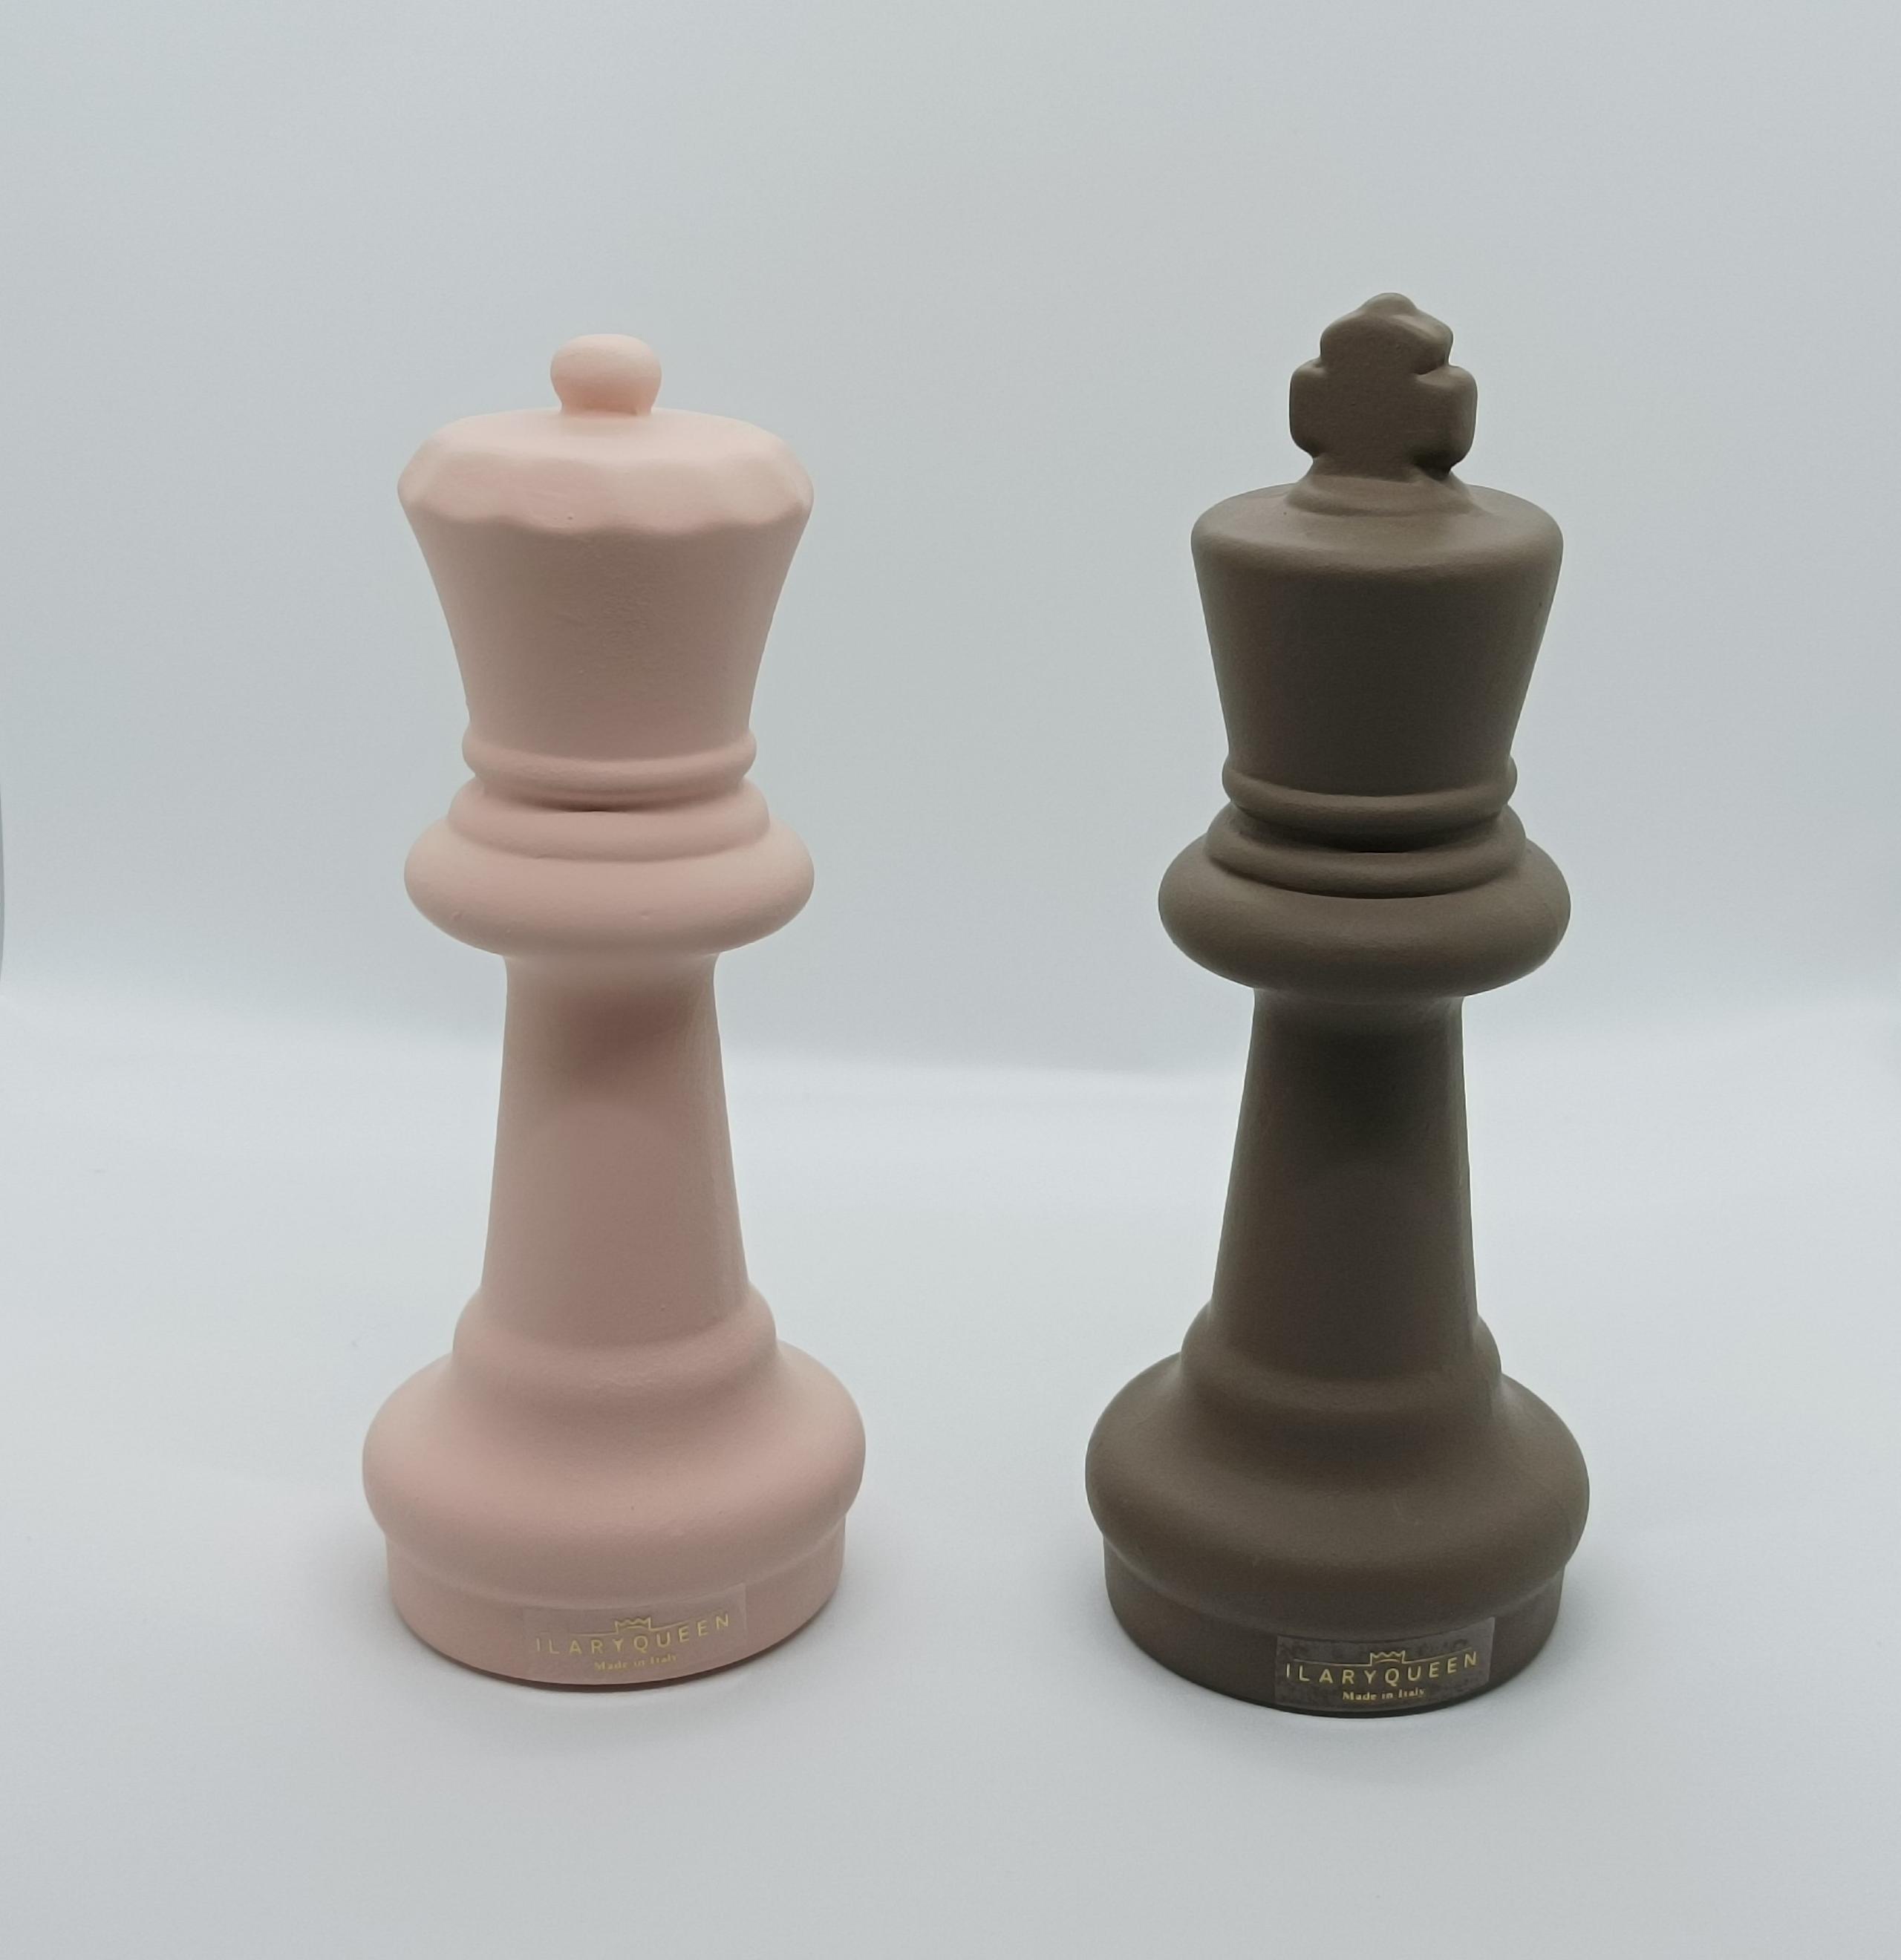 Ilary Queen - Collezione Inghilterra - Coppia scacchi Rosa/Tortora